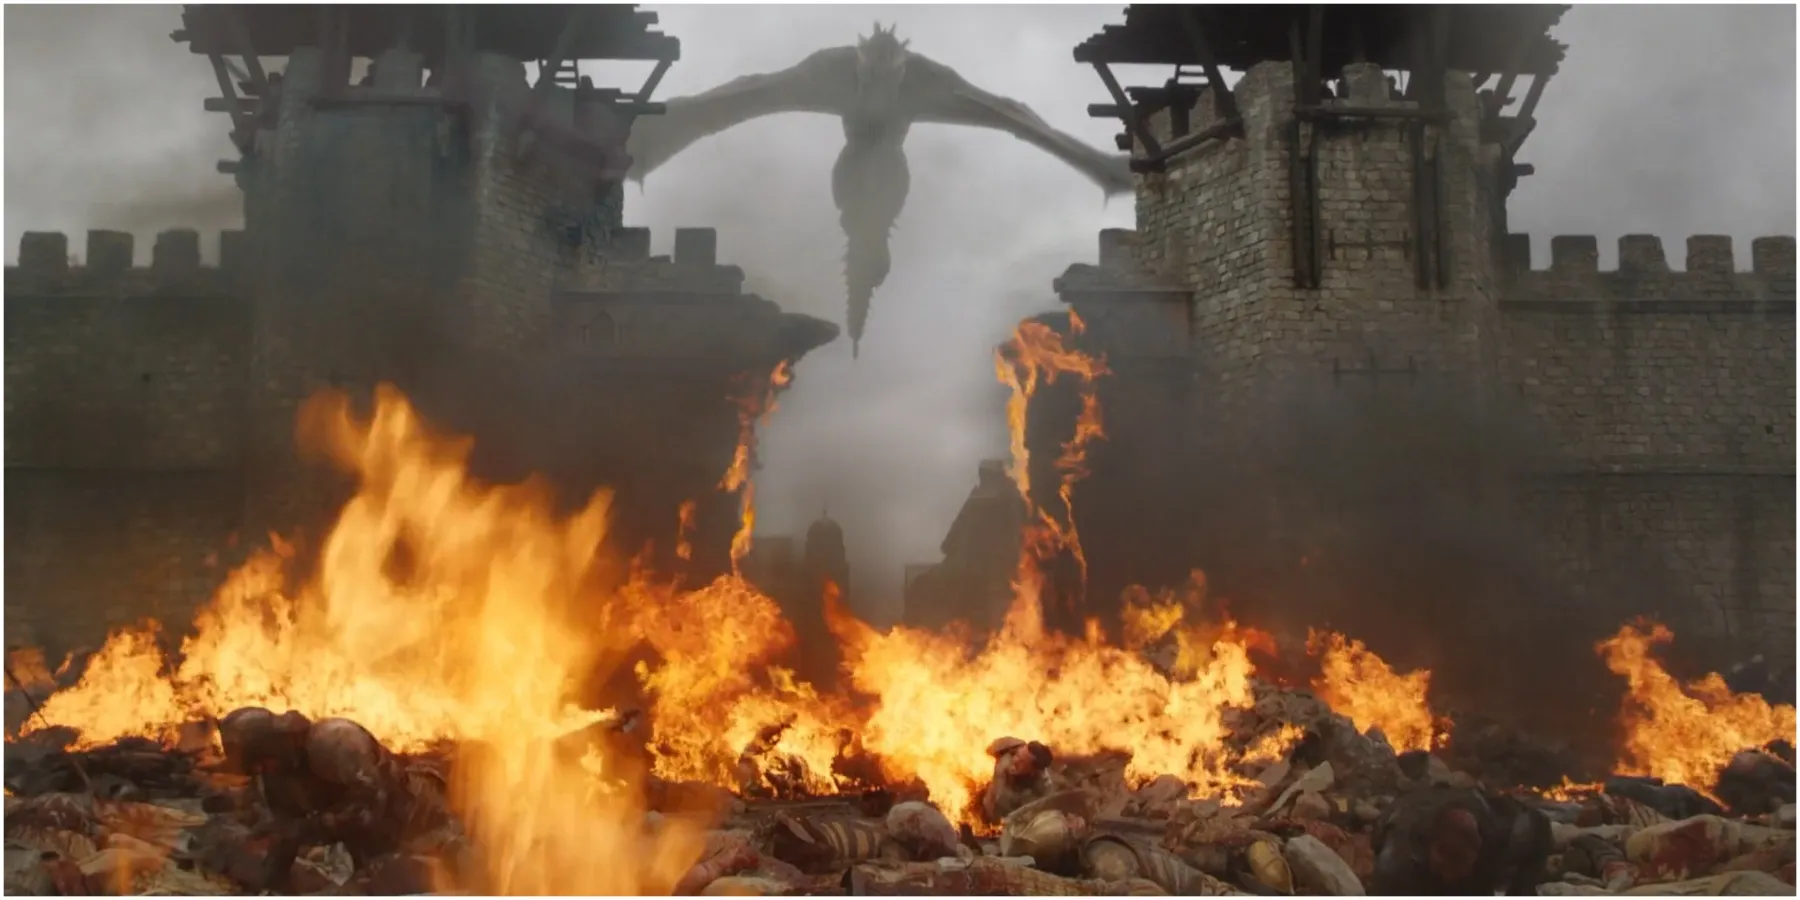 Drogon brucia i cancelli della città in Game of Thrones